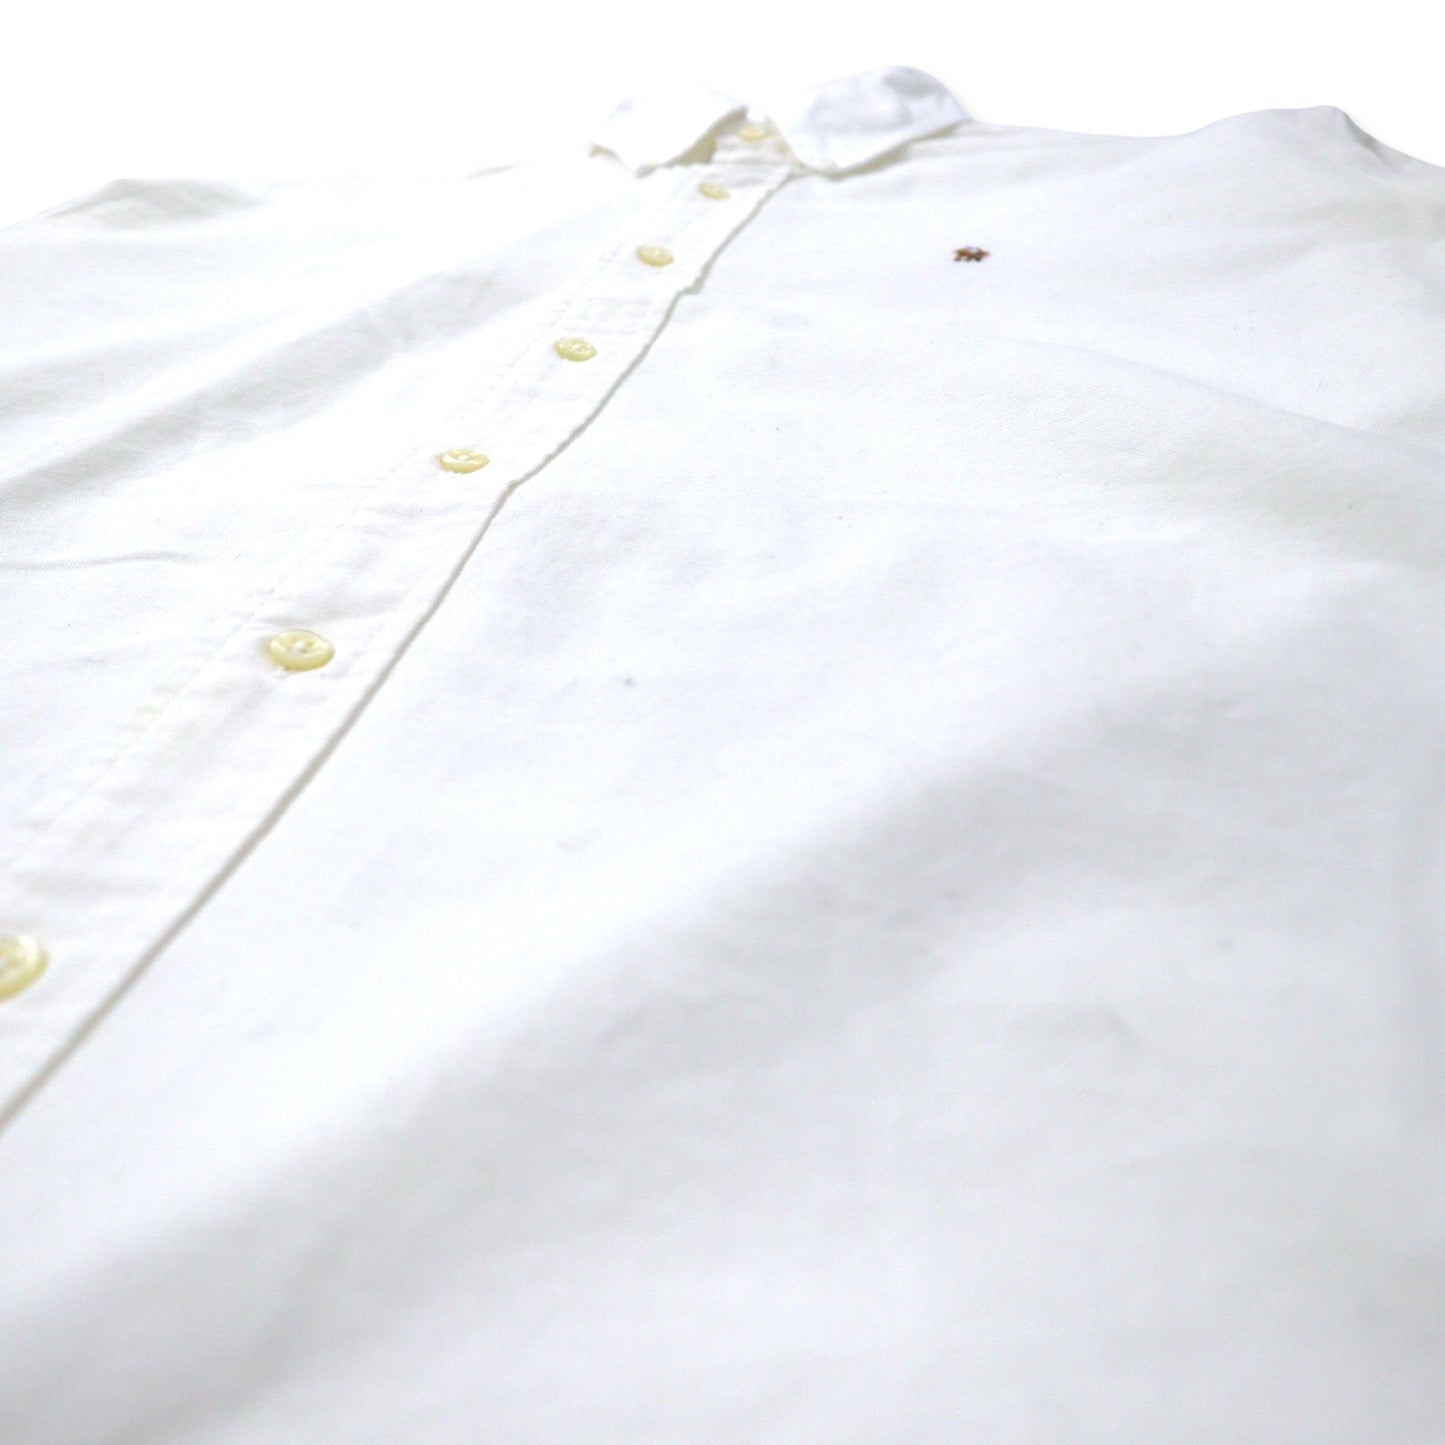 RALPH LAUREN オックスフォード ボタンダウンシャツ 16.5-33 ホワイト コットン